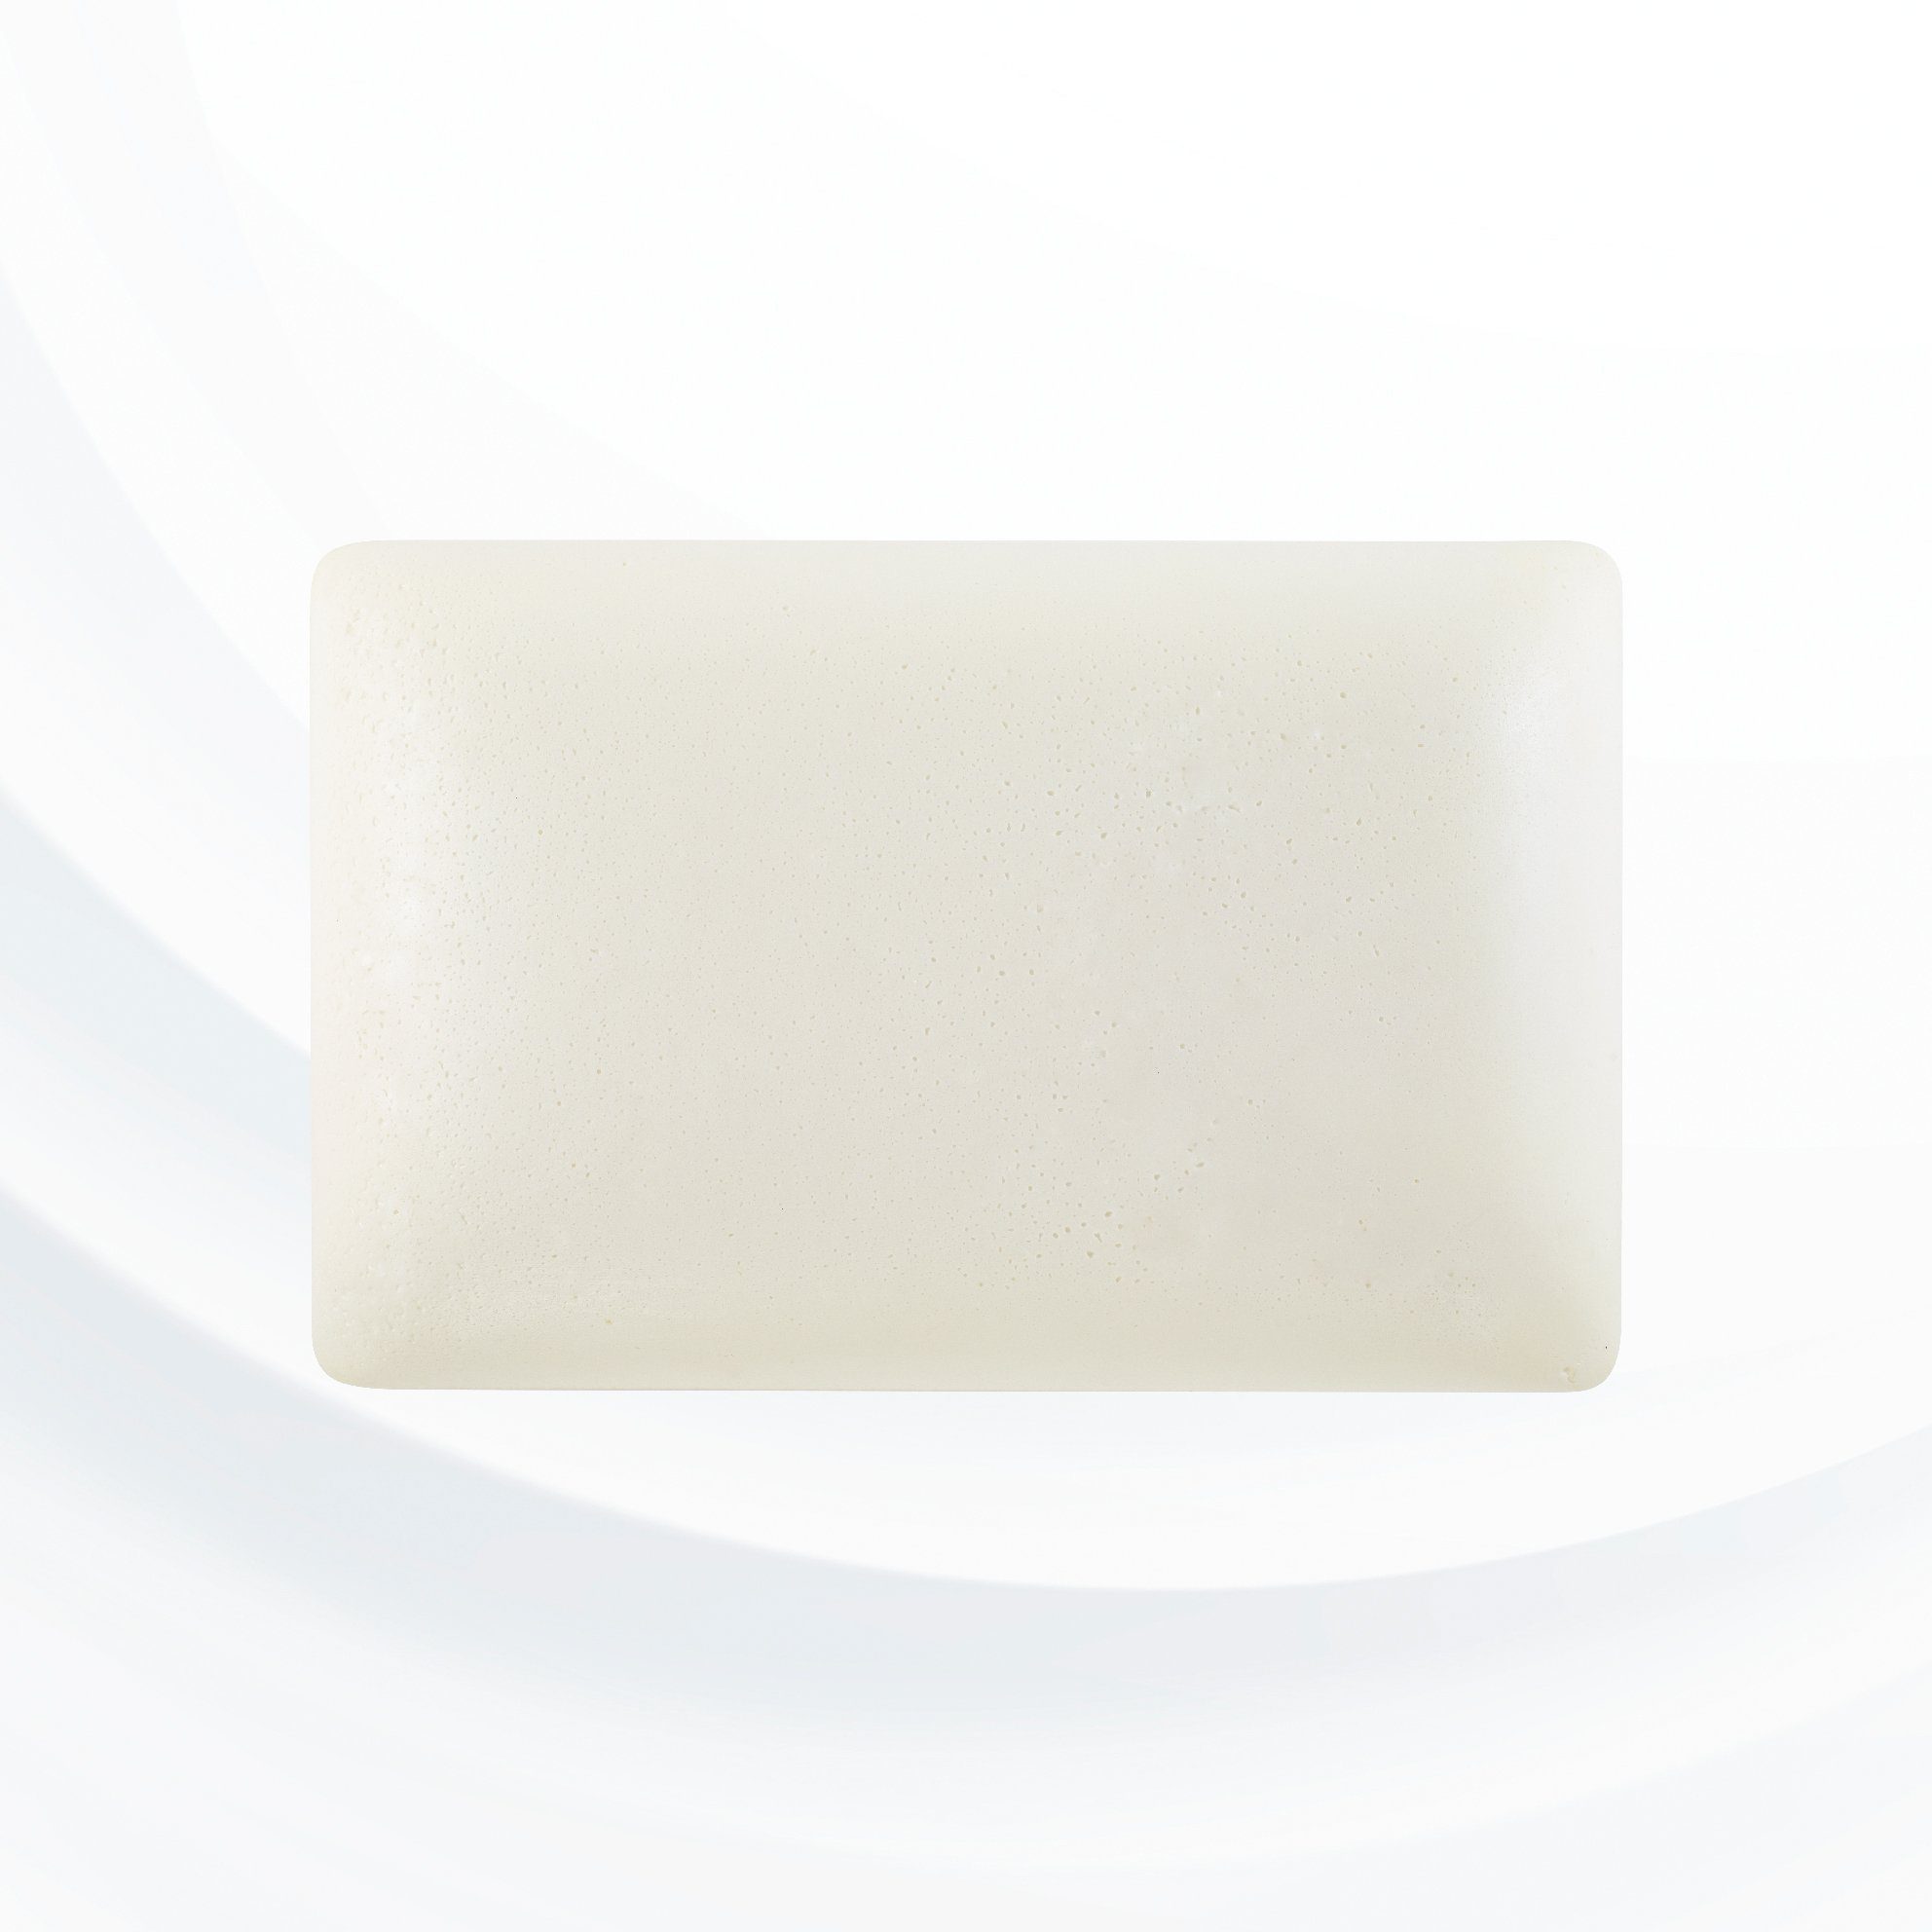 Kollagen-Vitamine Naturkissen Kopfkissen, Espira Whites mit Espira Collagen Whites 40x60cm Visko